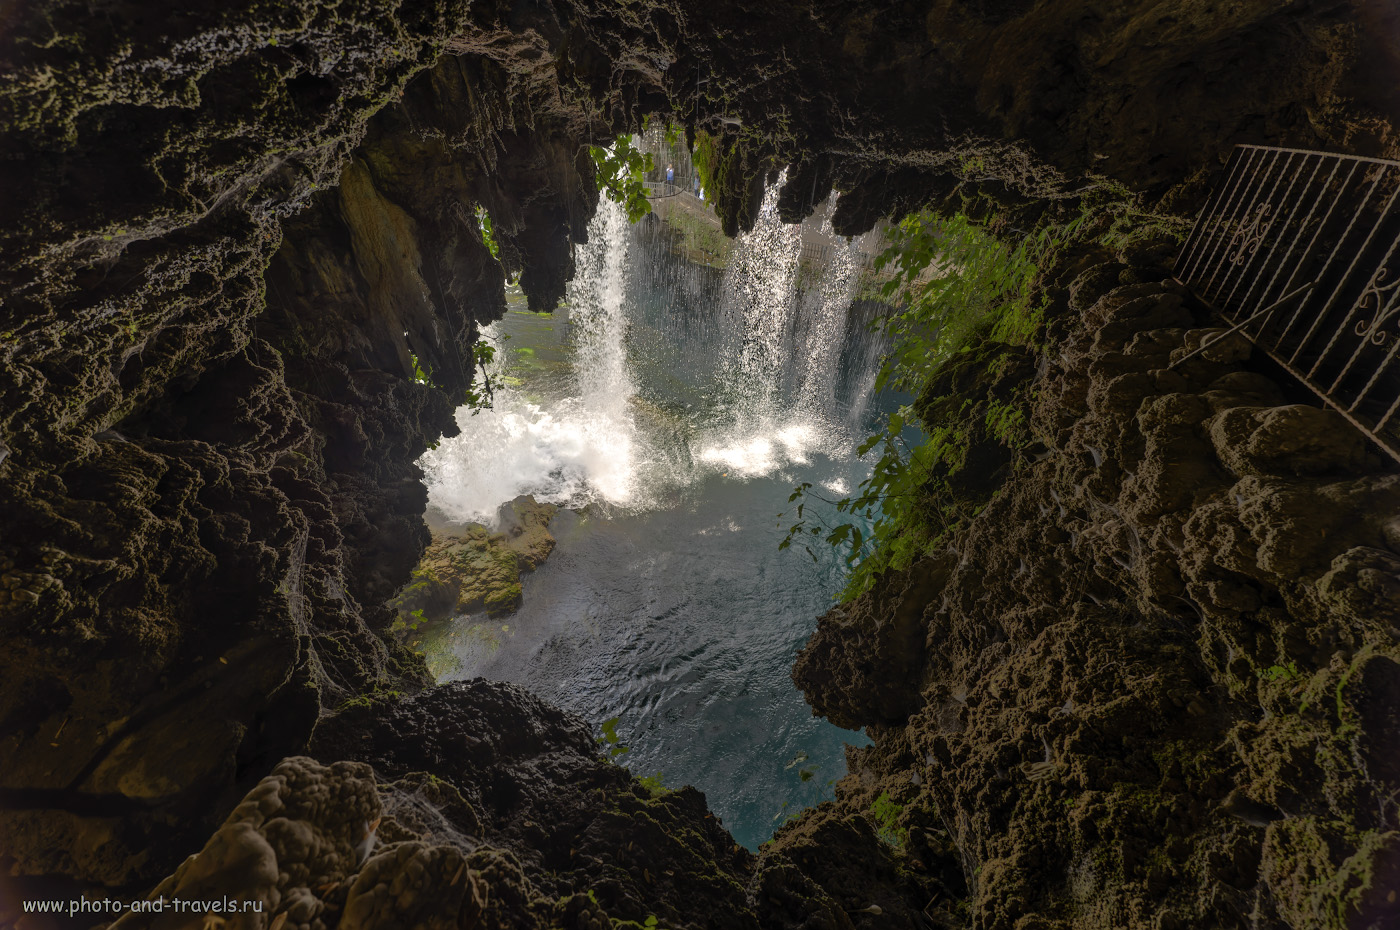 Фотография 12. Вид на Верхний Дюденский водопад со стороны грота. Экскурсии по интересным местам в Анталии. Отчеты туристов об отдыхе в Турции дикарями. HDR из 3-х кадров. Снято на Nikon D610 со сверхширокоугольным объективом Samayng 14mm f/2.8 с использованием карбонового штатива Sirui T2204X-G20KX.